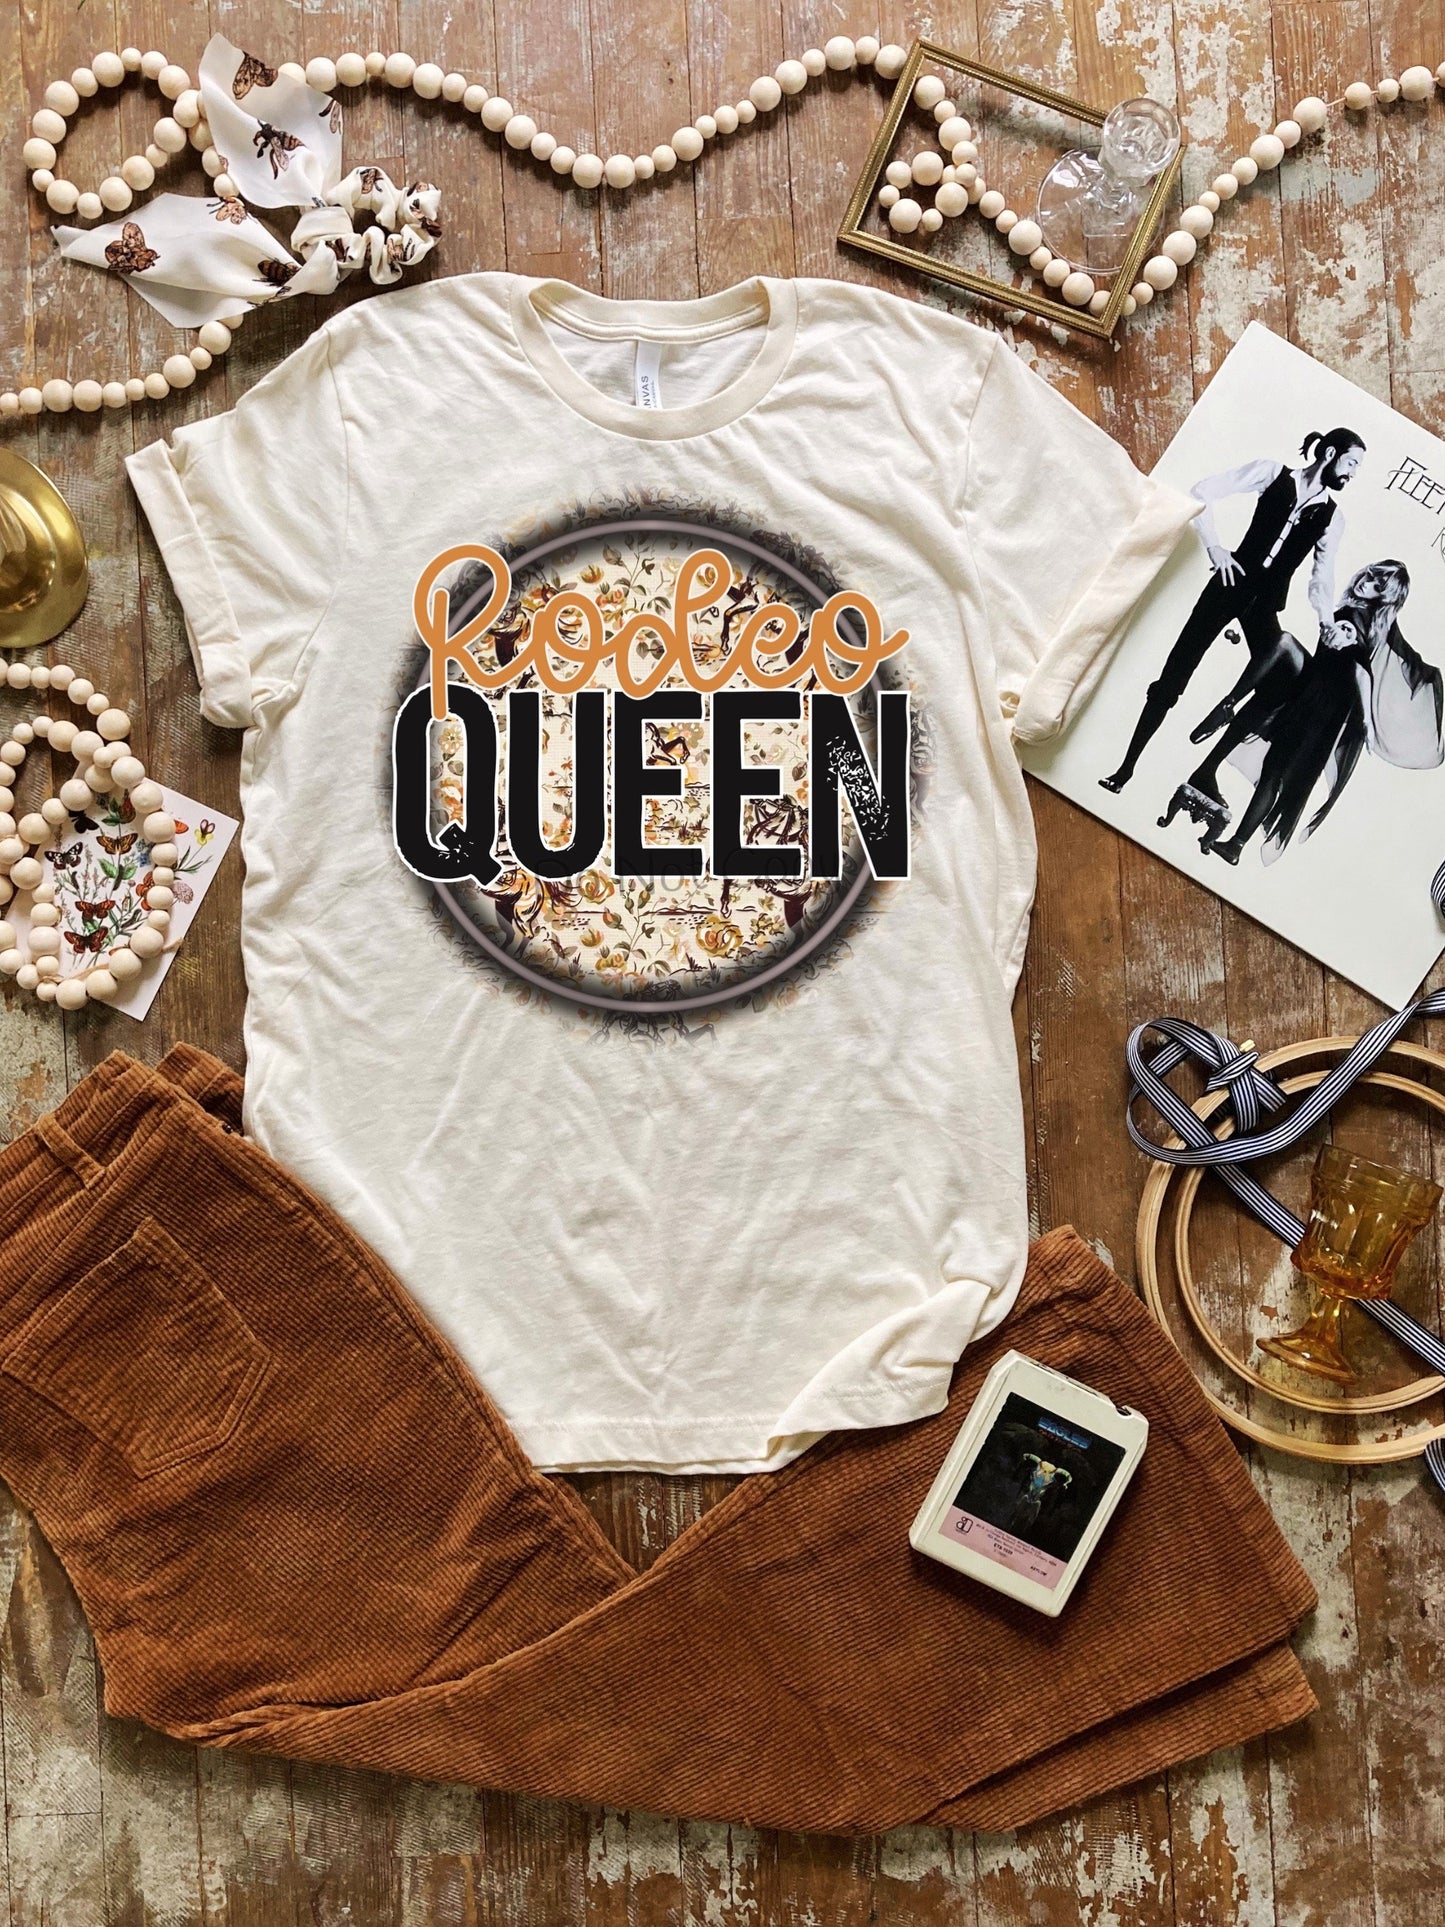 Rodeo queen-DTF